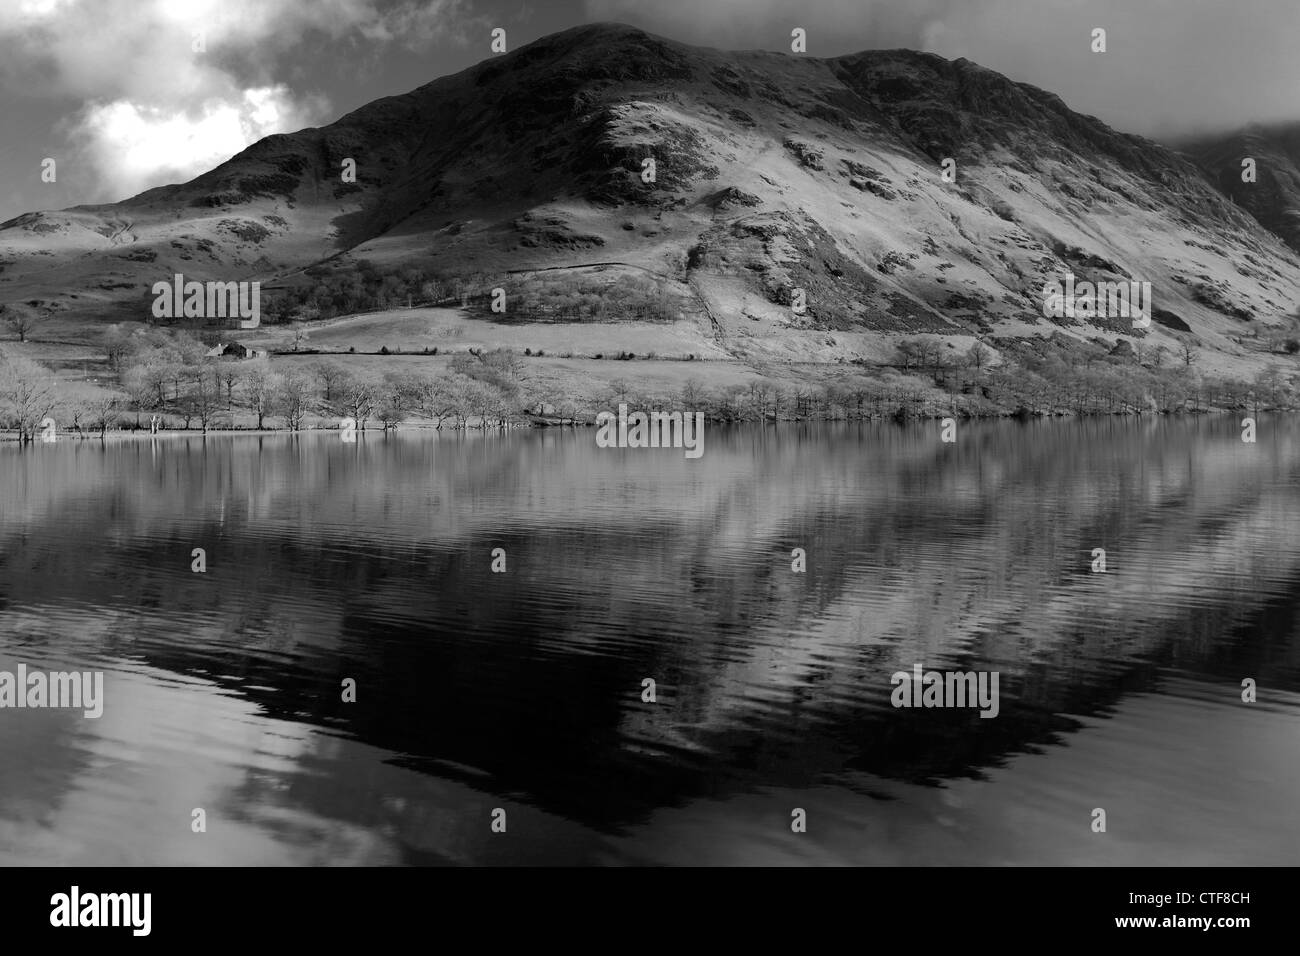 Immagine in bianco e nero del Buttermere fells riflessa in Buttermere, Parco Nazionale del Distretto dei Laghi, Cumbria County, Inghilterra Foto Stock